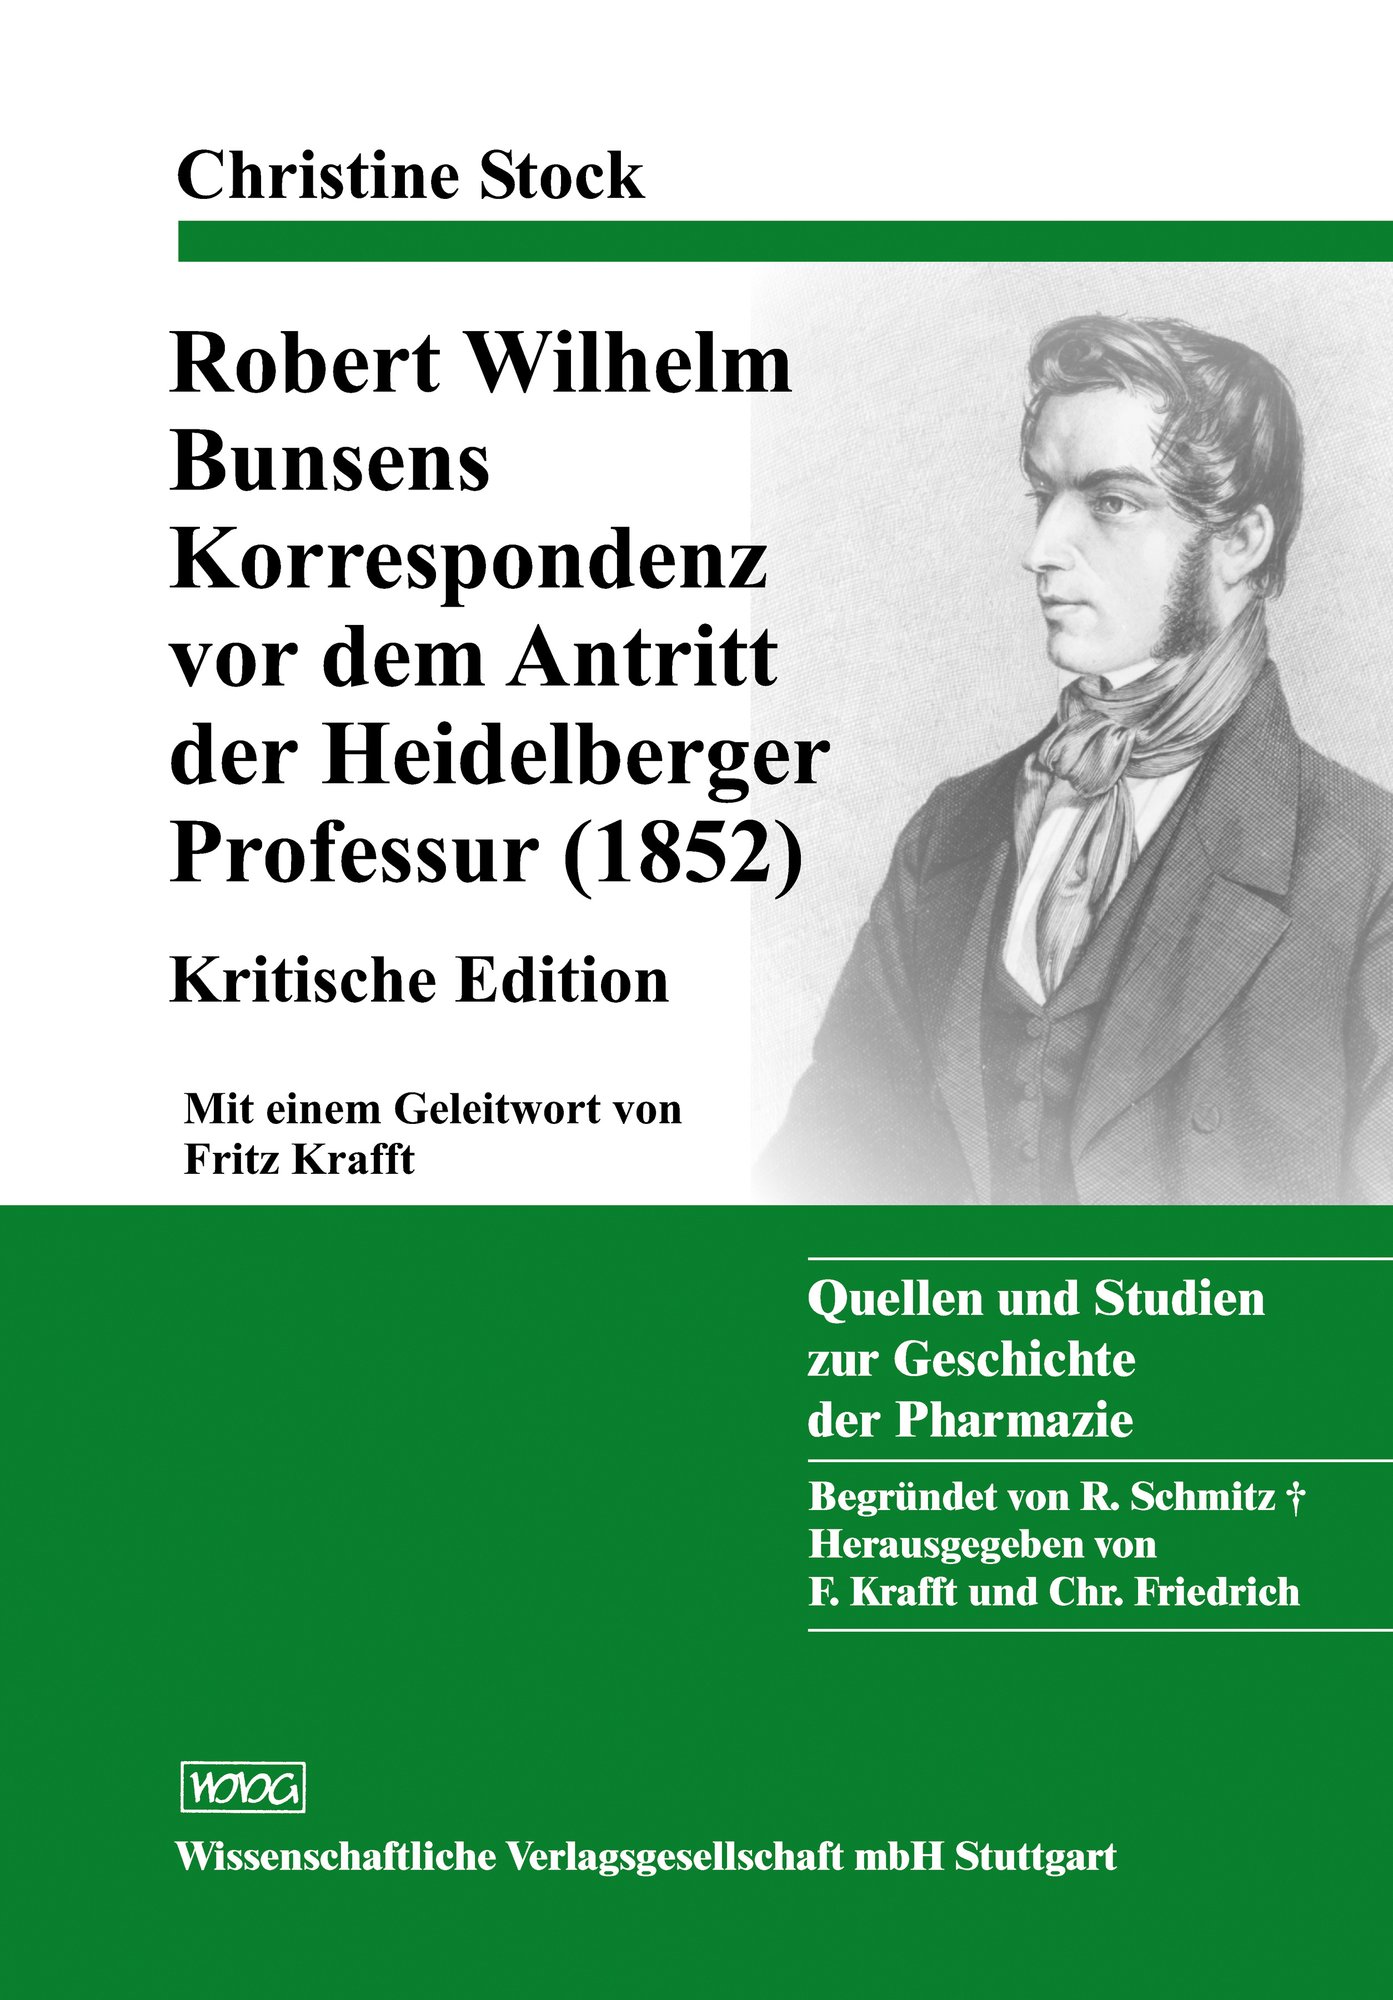 Robert Wilhelm Bunsens Korrespondenz vor dem Antritt der Heidelberger Professur (1852)